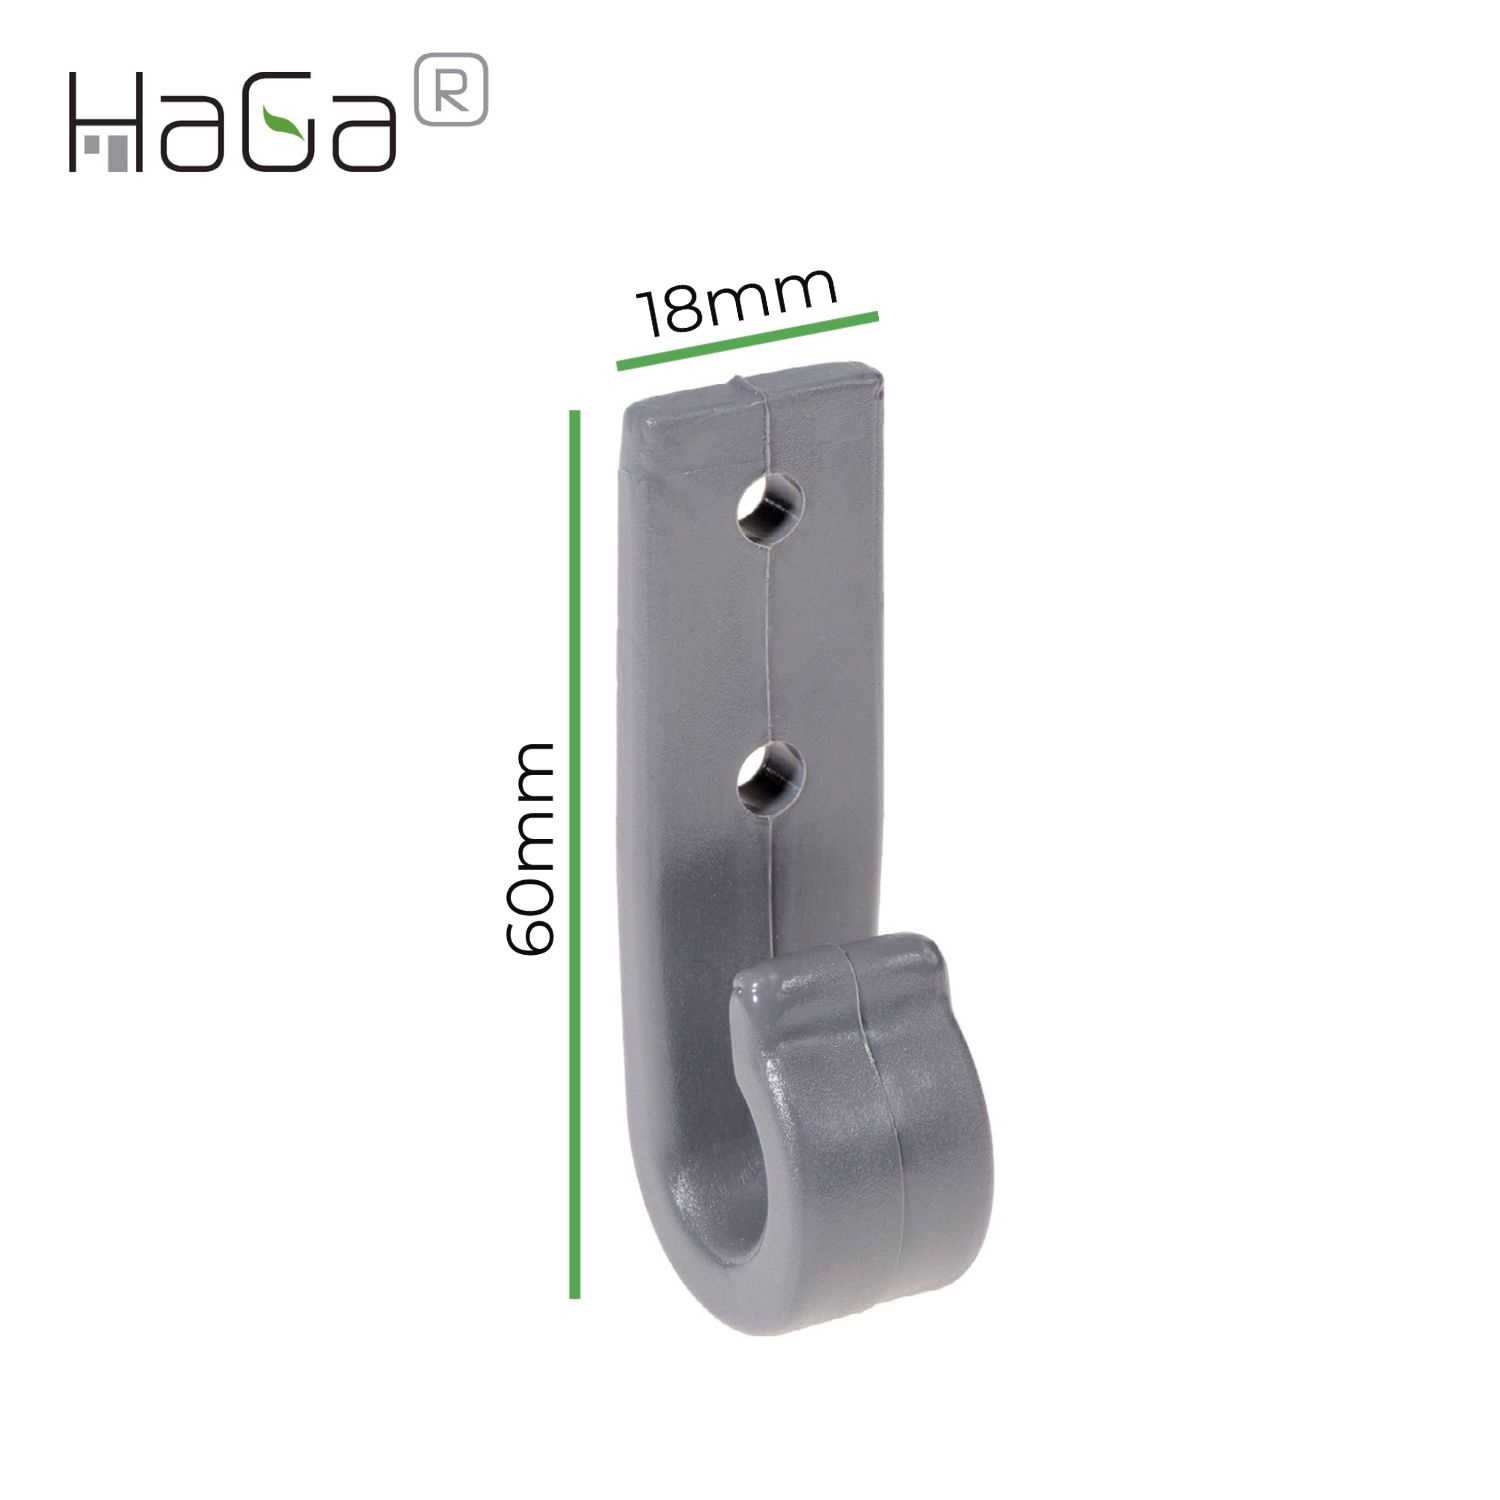 Planenhaken Zweilochhaken für Schleuderverschluss HaGa® 60mm x 18mm 100 Stück